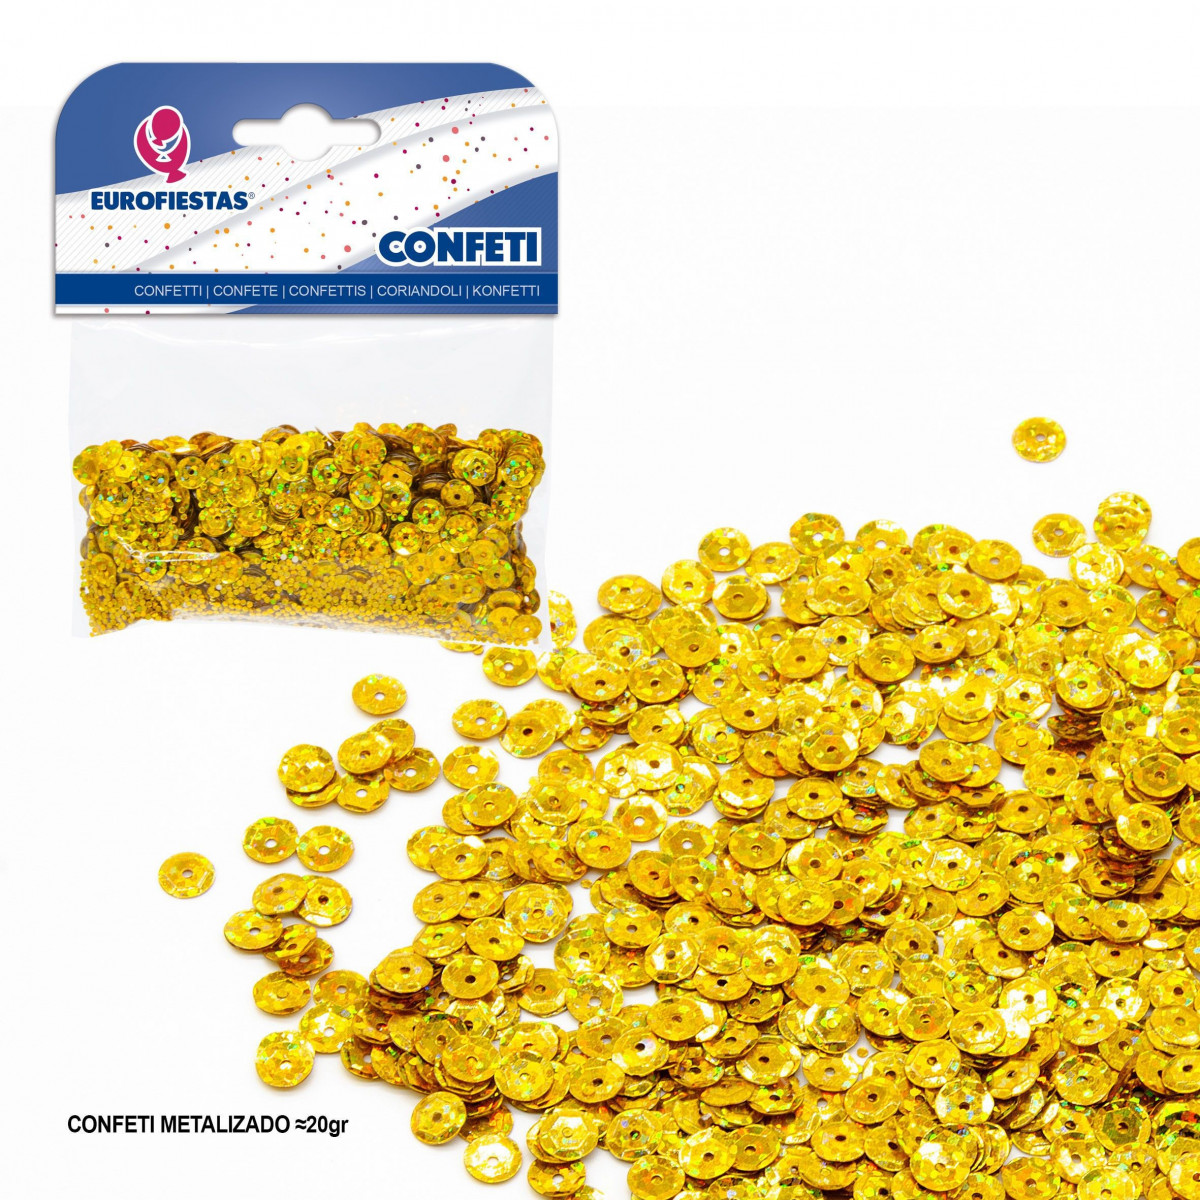 Confeti brillante lentejuelas oro